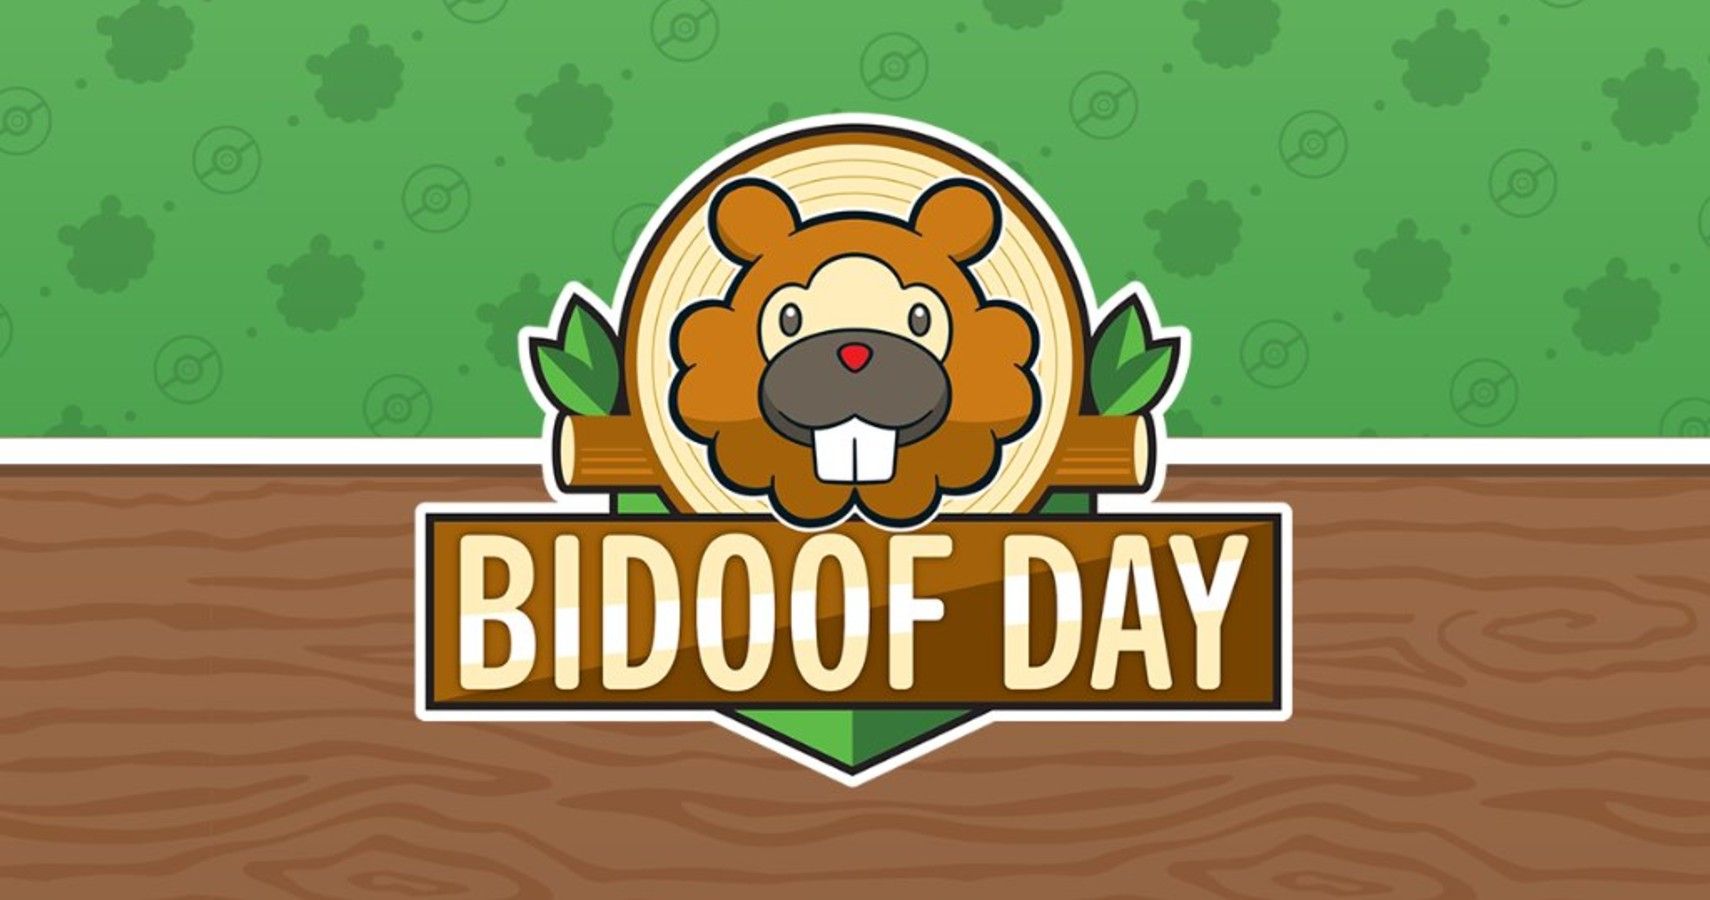 bidoof day